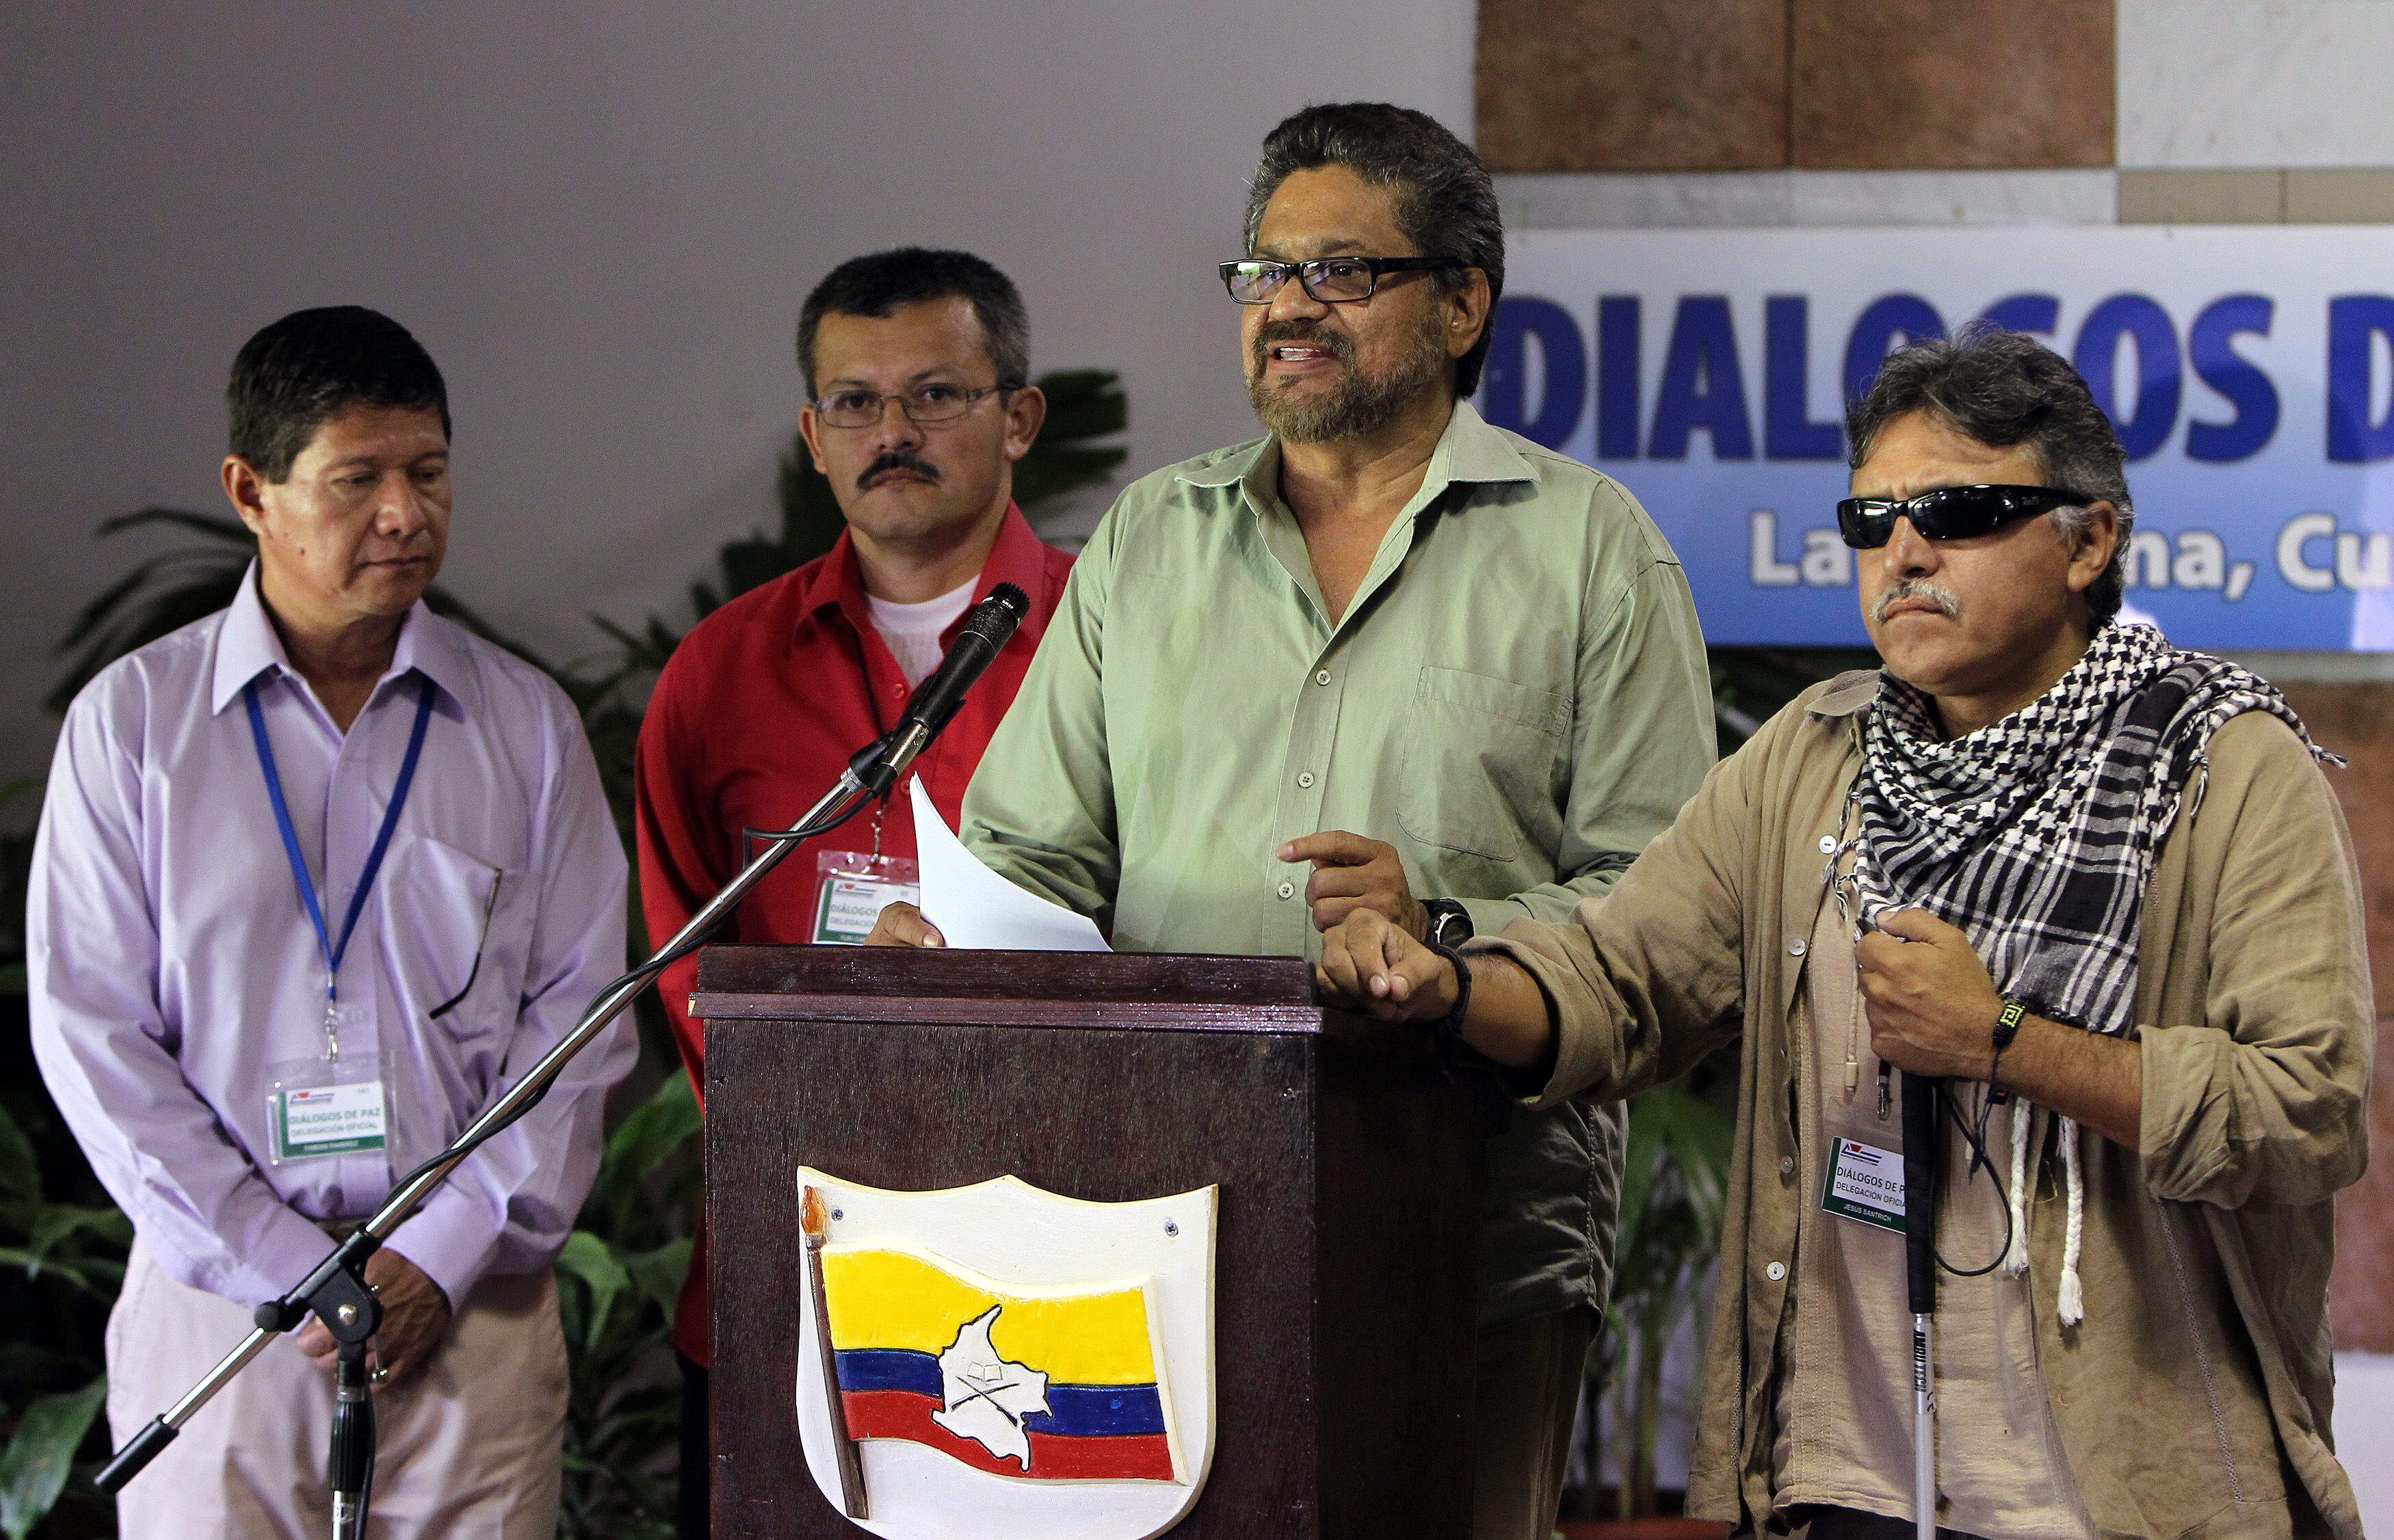 El texto también recuerda al Comandante Alfonso Cano, destacado guerrillero y líder de las FARC, asesinado por militares colombianos en 2011.